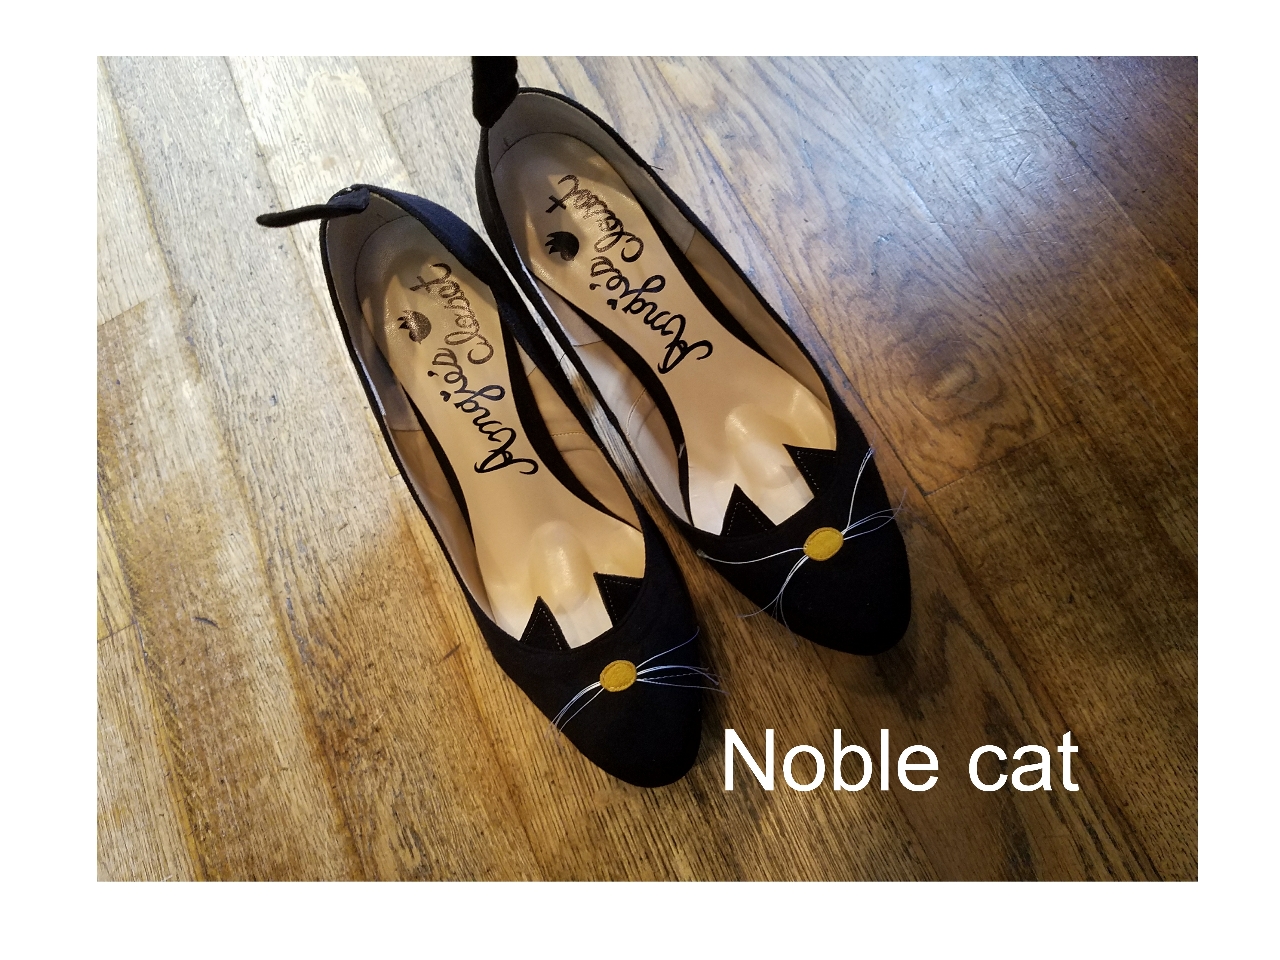 Noble cat